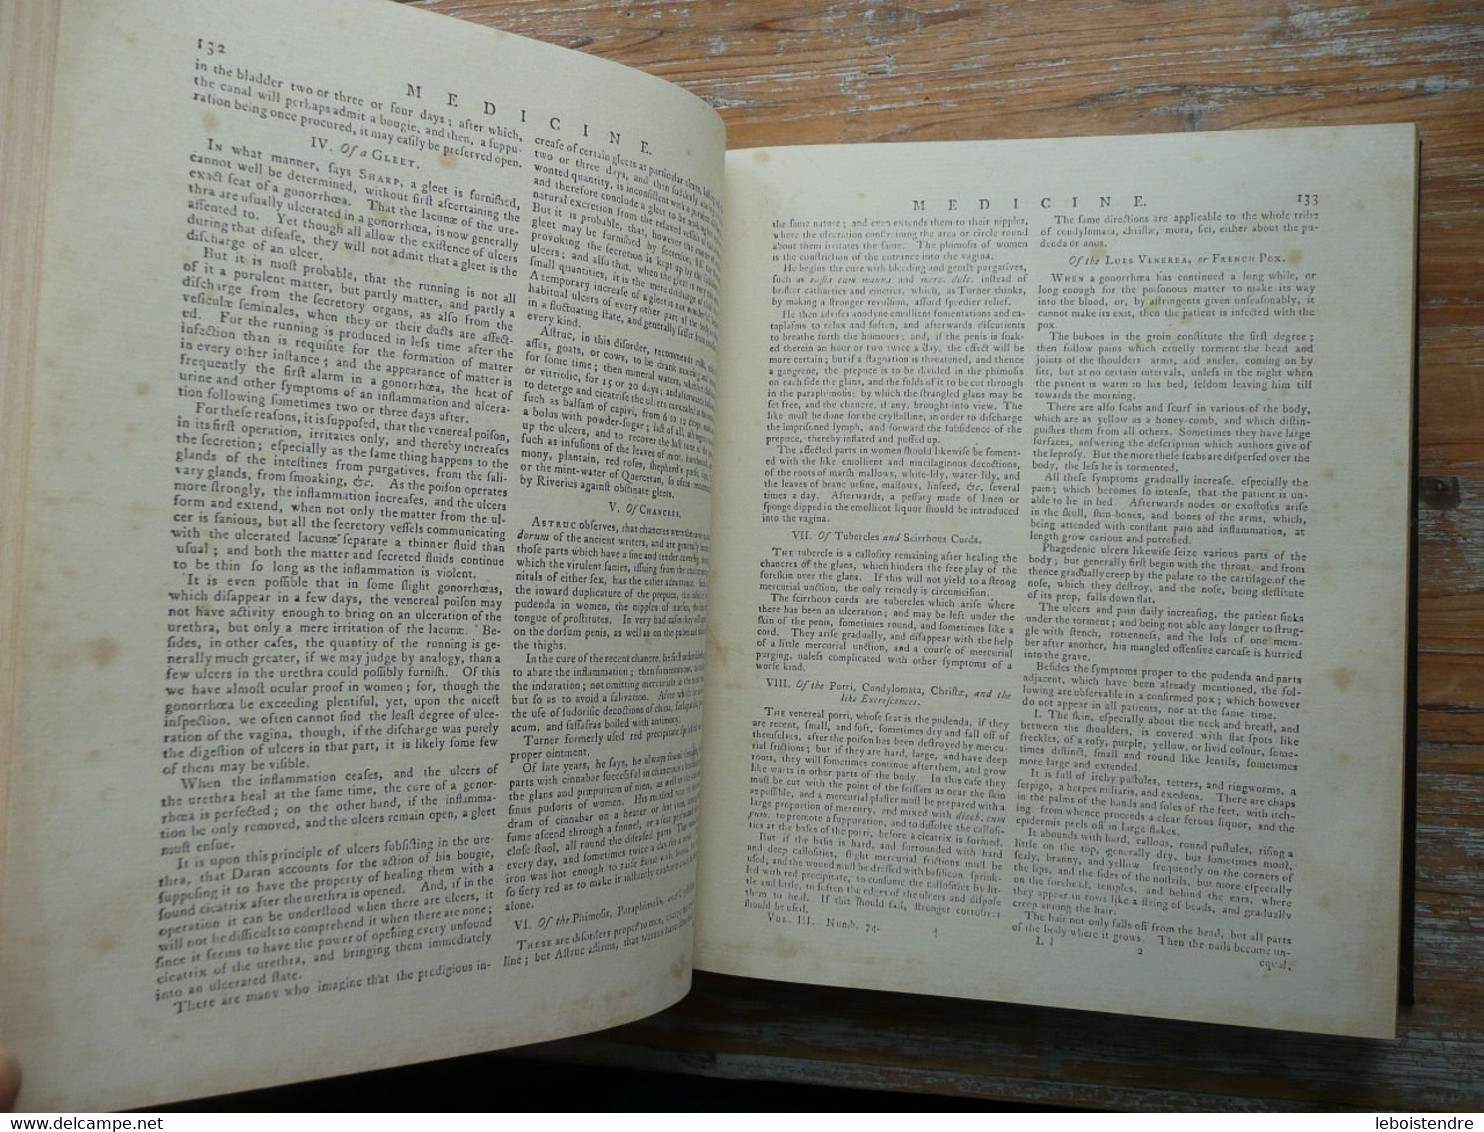 ENCYCLOPAEDIA BRITANNICA IN THREE VOLUMES 1771 EN 3 TOMES FAC SIMILE DE LA CELEBRE ENCYCLOPEDIE NON DATEE ENCYCLOPEDIA - Cultural